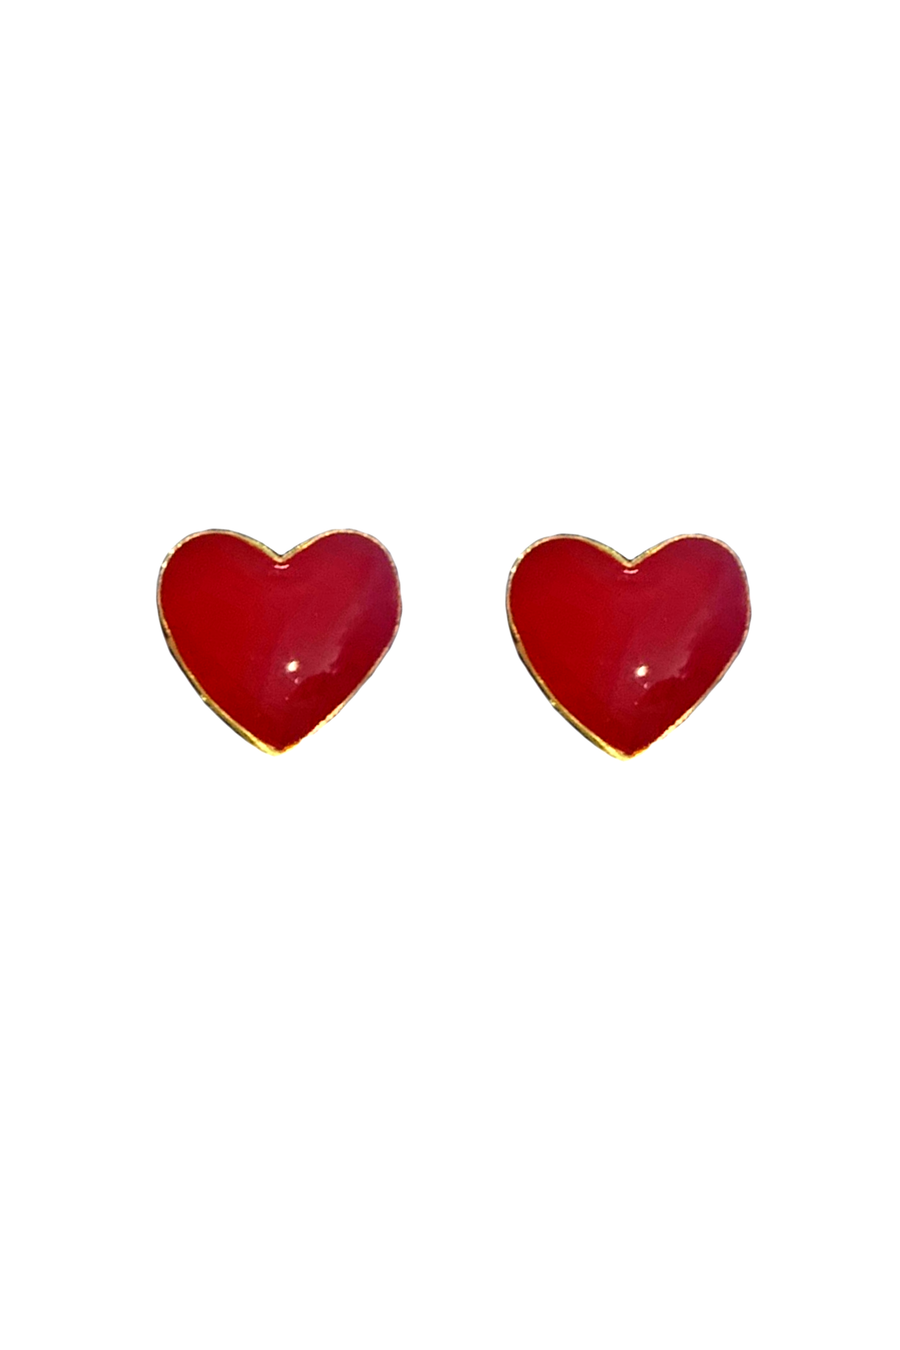 Enamel Heart Earrings - Red - Shop Yu Fashion